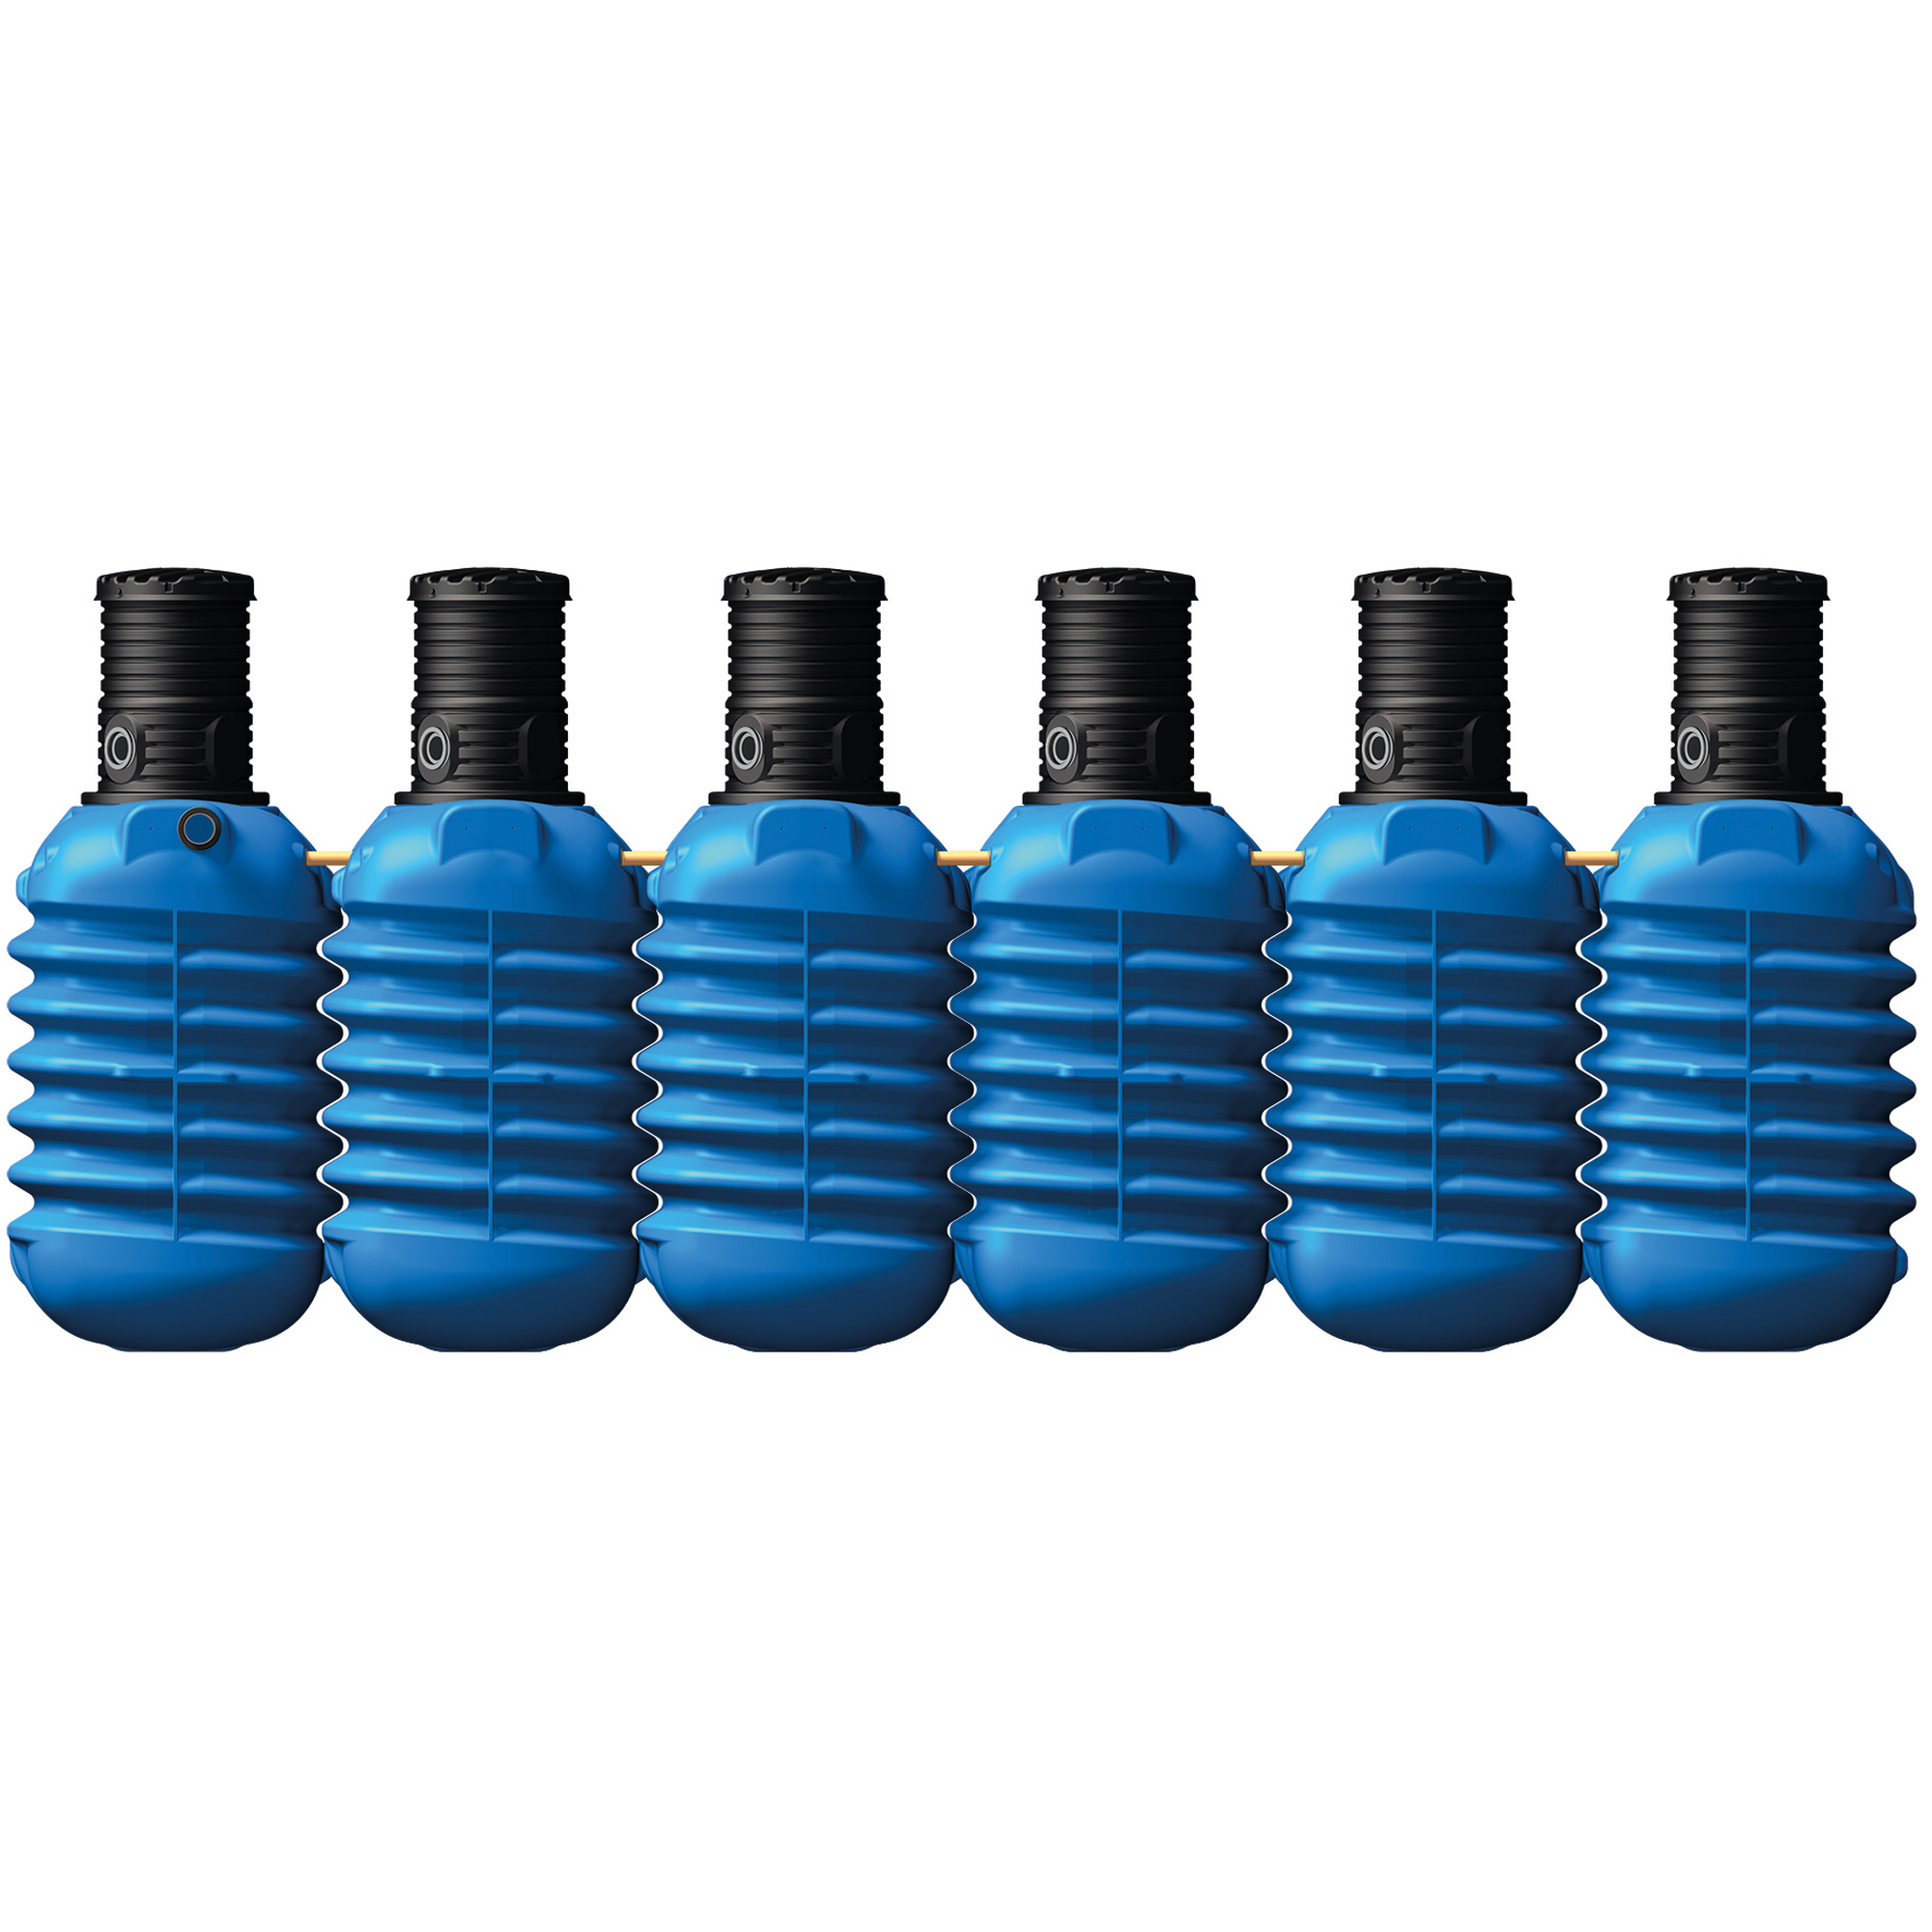 Erdtank-Paket Modularis 'Haus-Premium' blau 15.000 l 691 x 147 x 201 cm + product picture